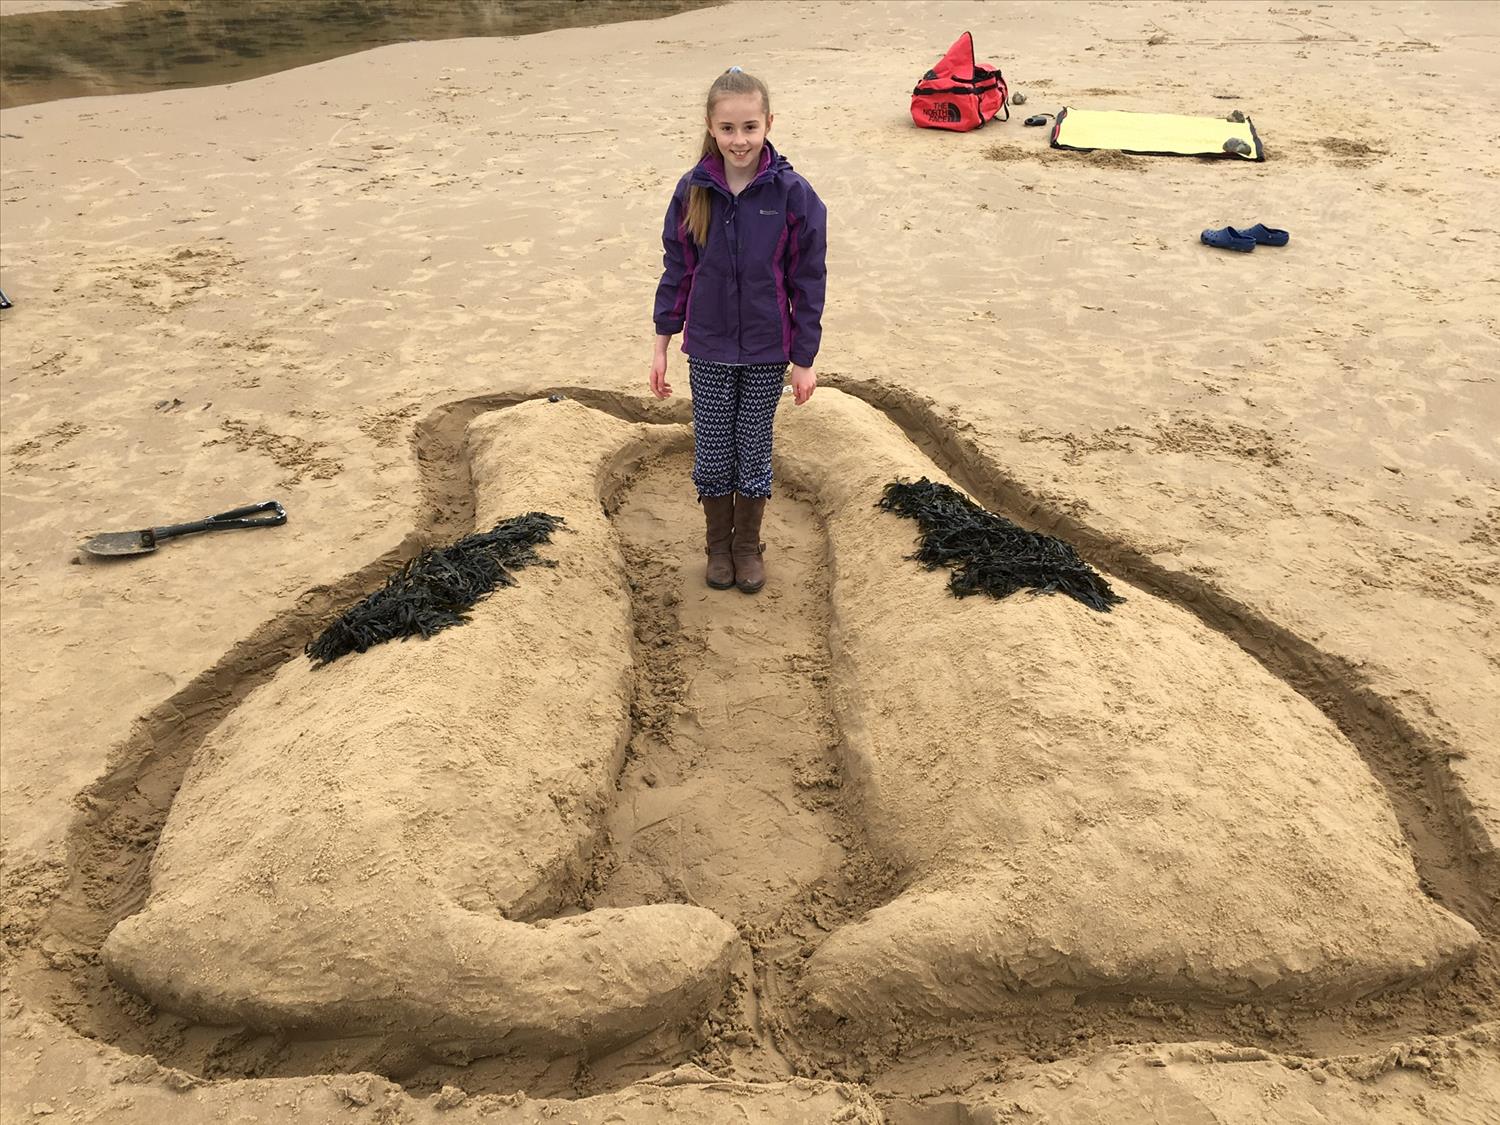 Penguin Sand sculpture on East Runton beach @NorfolkCoastline